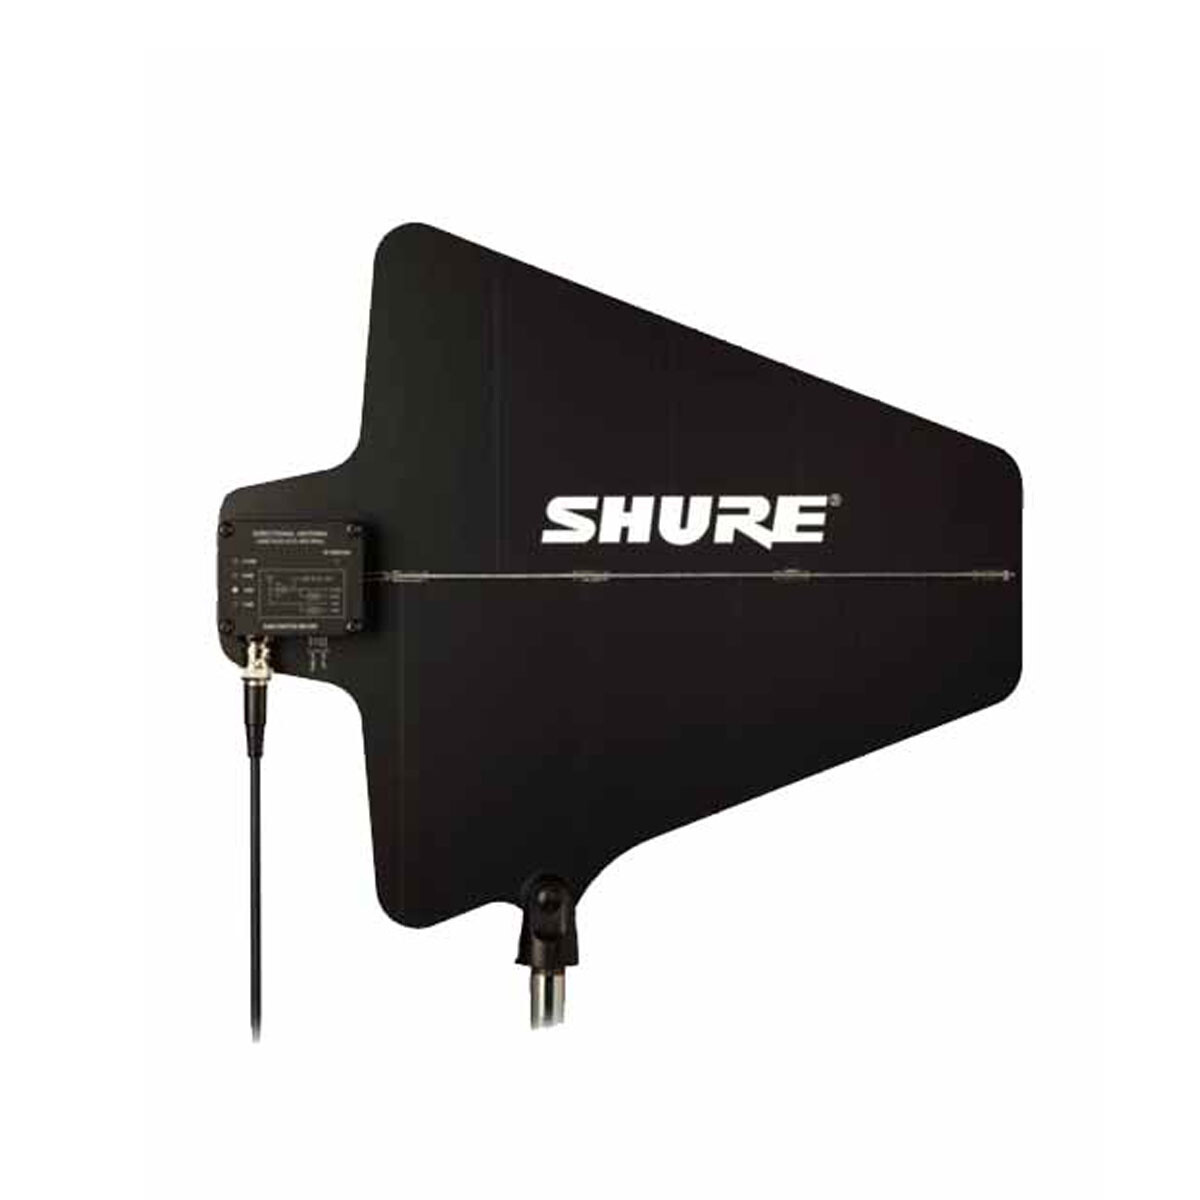 Antena Shure Ua874us 